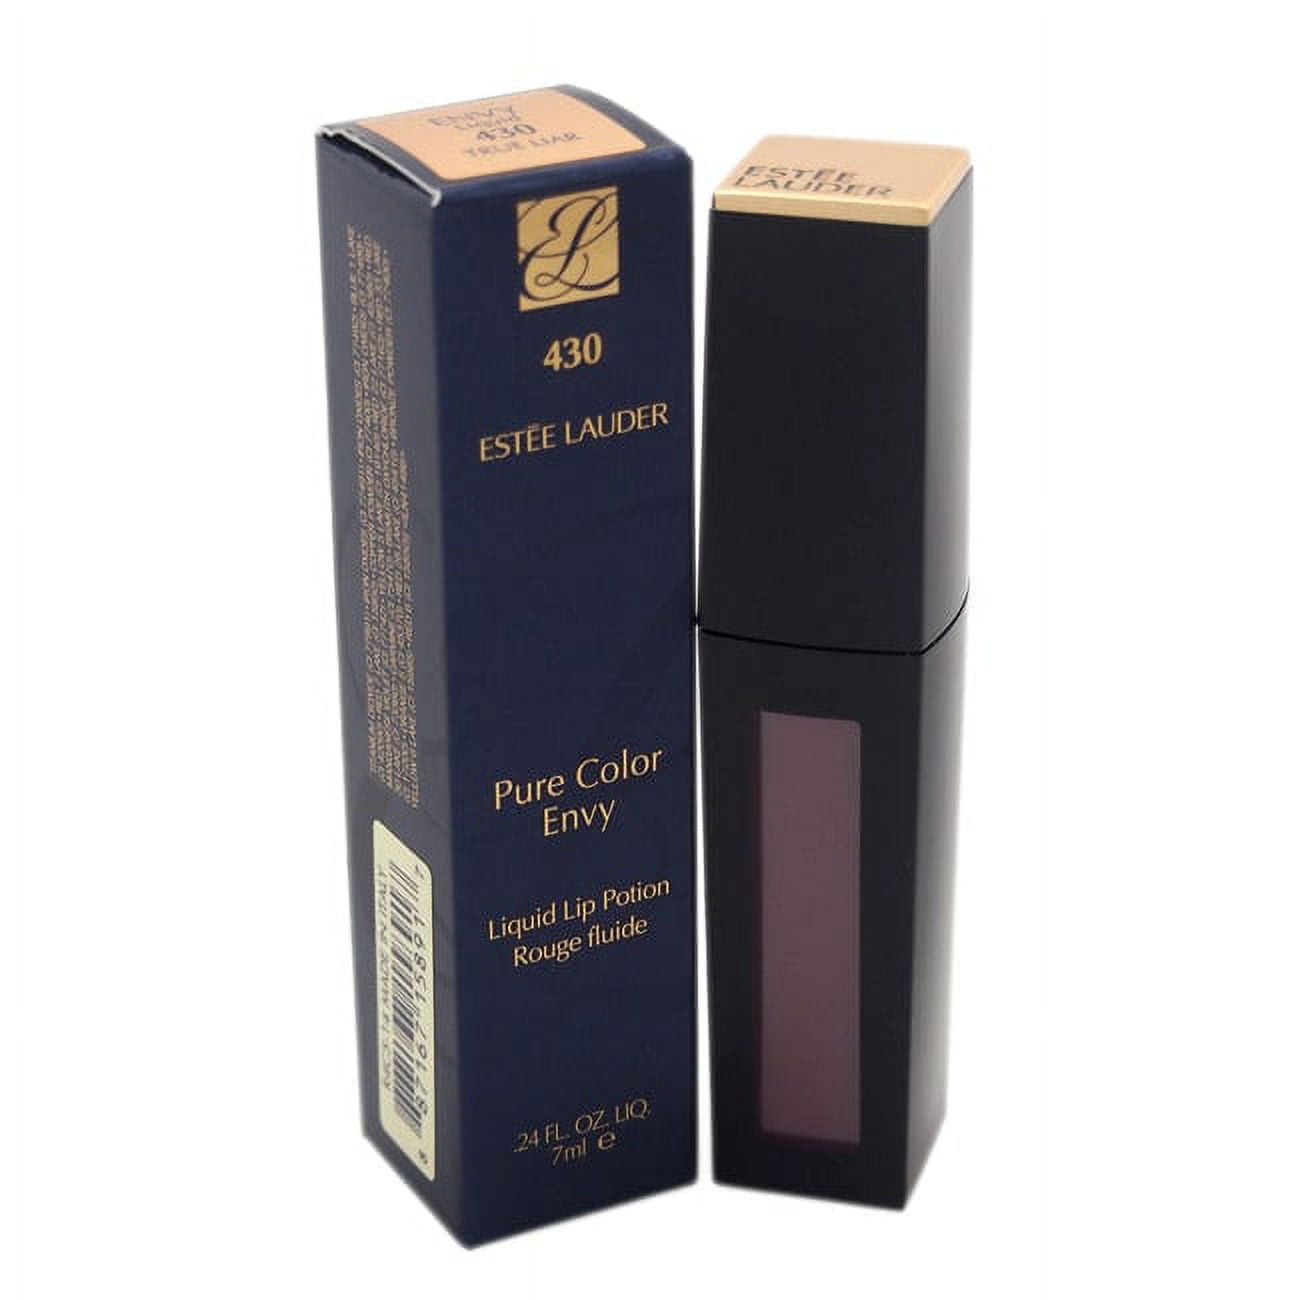 Pure Color Envy Liquid Lip Potion - # 430 True Liar by Estee Lauder for  Women - 0.24 oz Lip Gloss